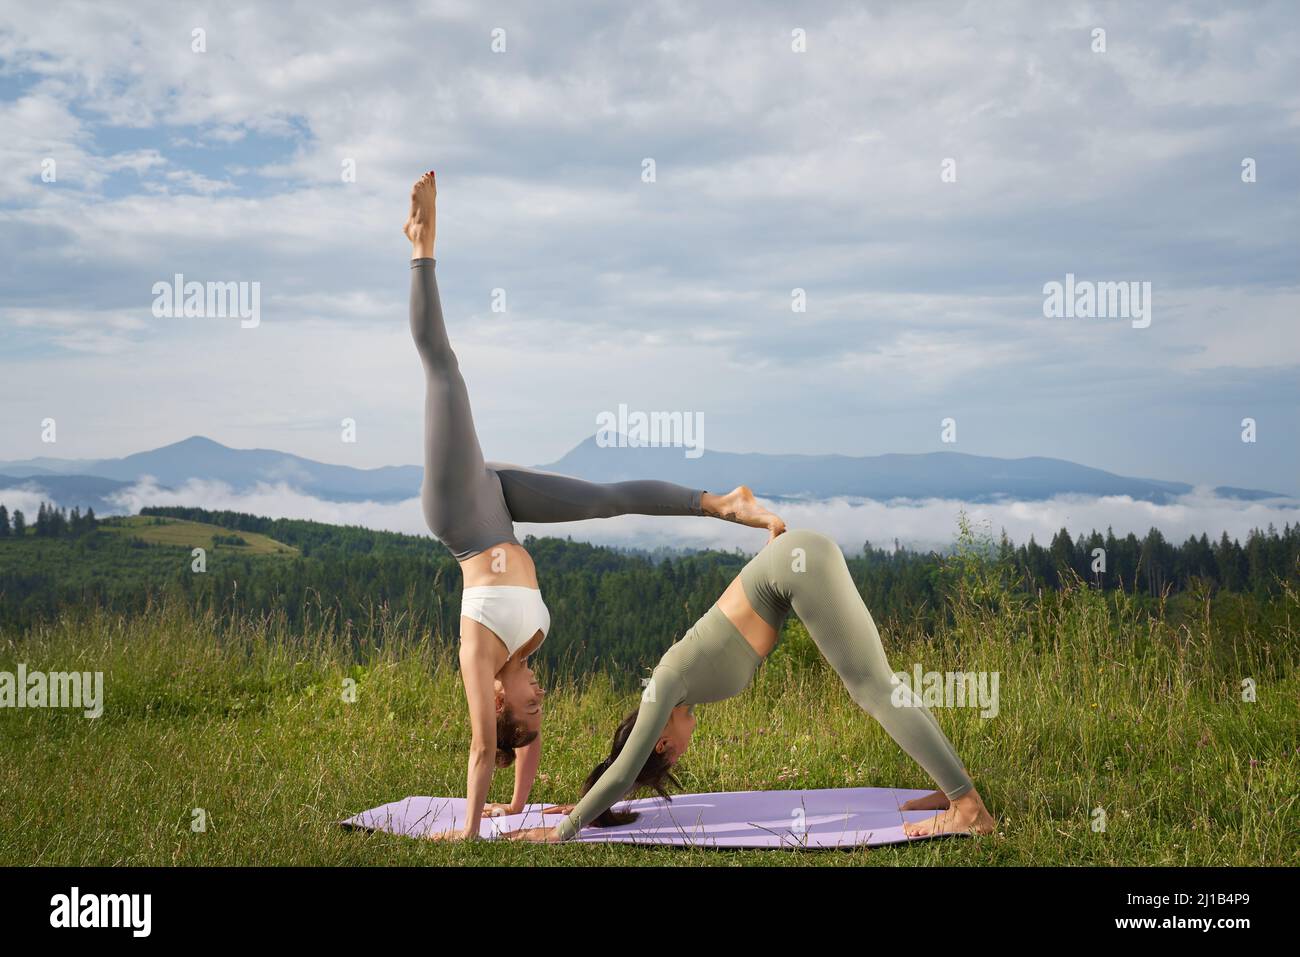 Deux femmes caucasiennes en vêtements de sport pratiquant l'acro yoga pendant la journée d'été dans les montagnes. Concept de personnes, modes de vie sains et activités de plein air Banque D'Images